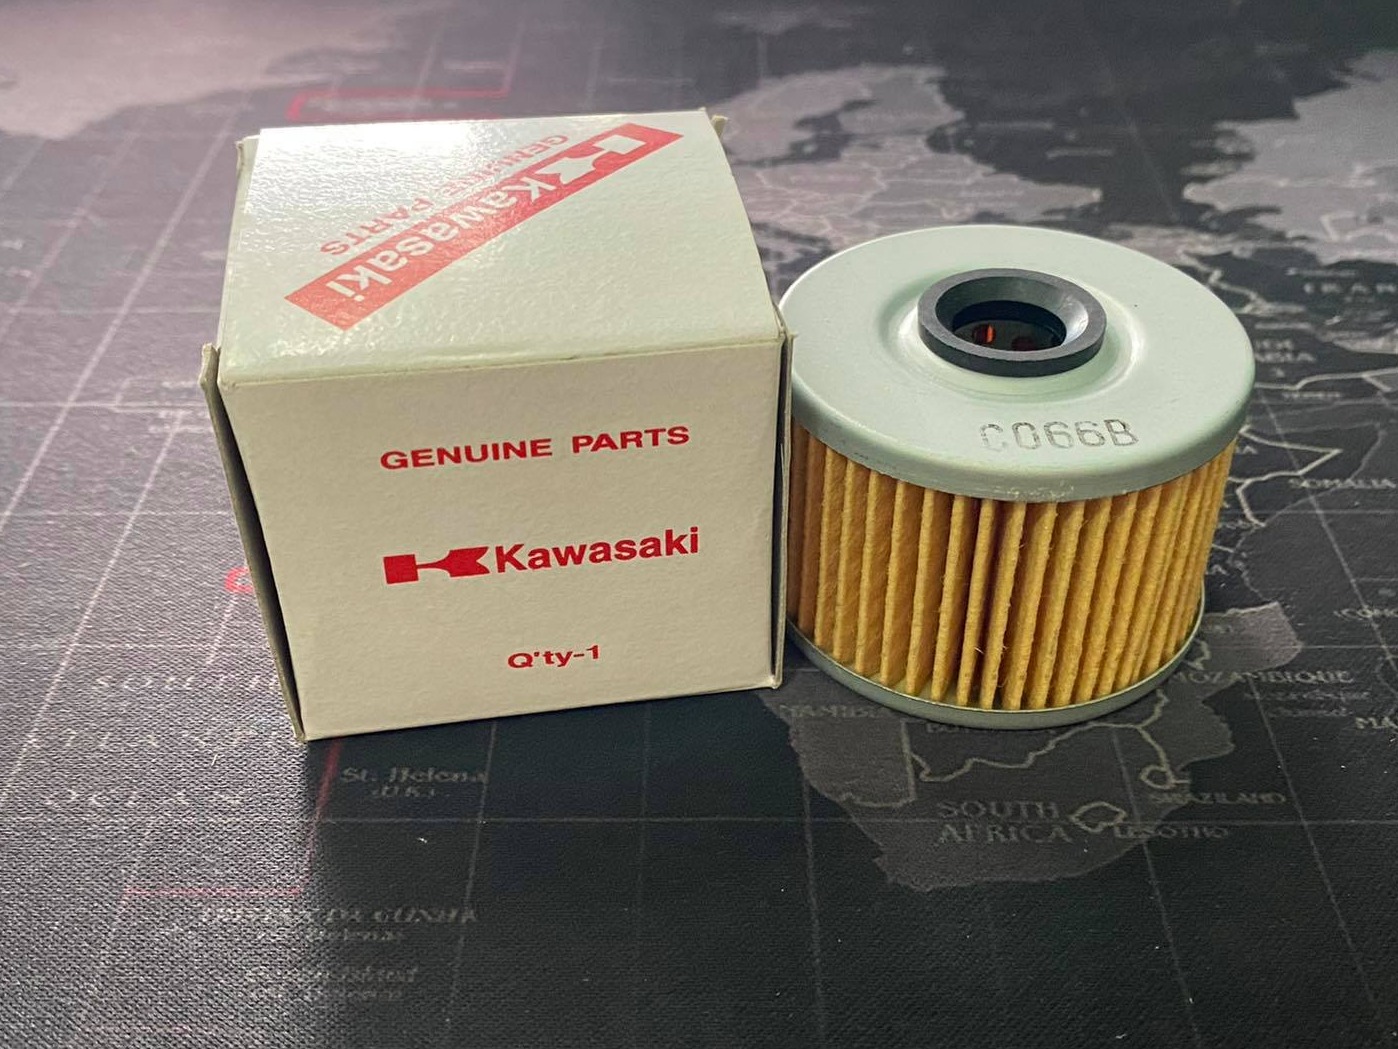 ไส้กรองน้ำมันเครื่อง Kawasaki : KSR110 , KX 450F